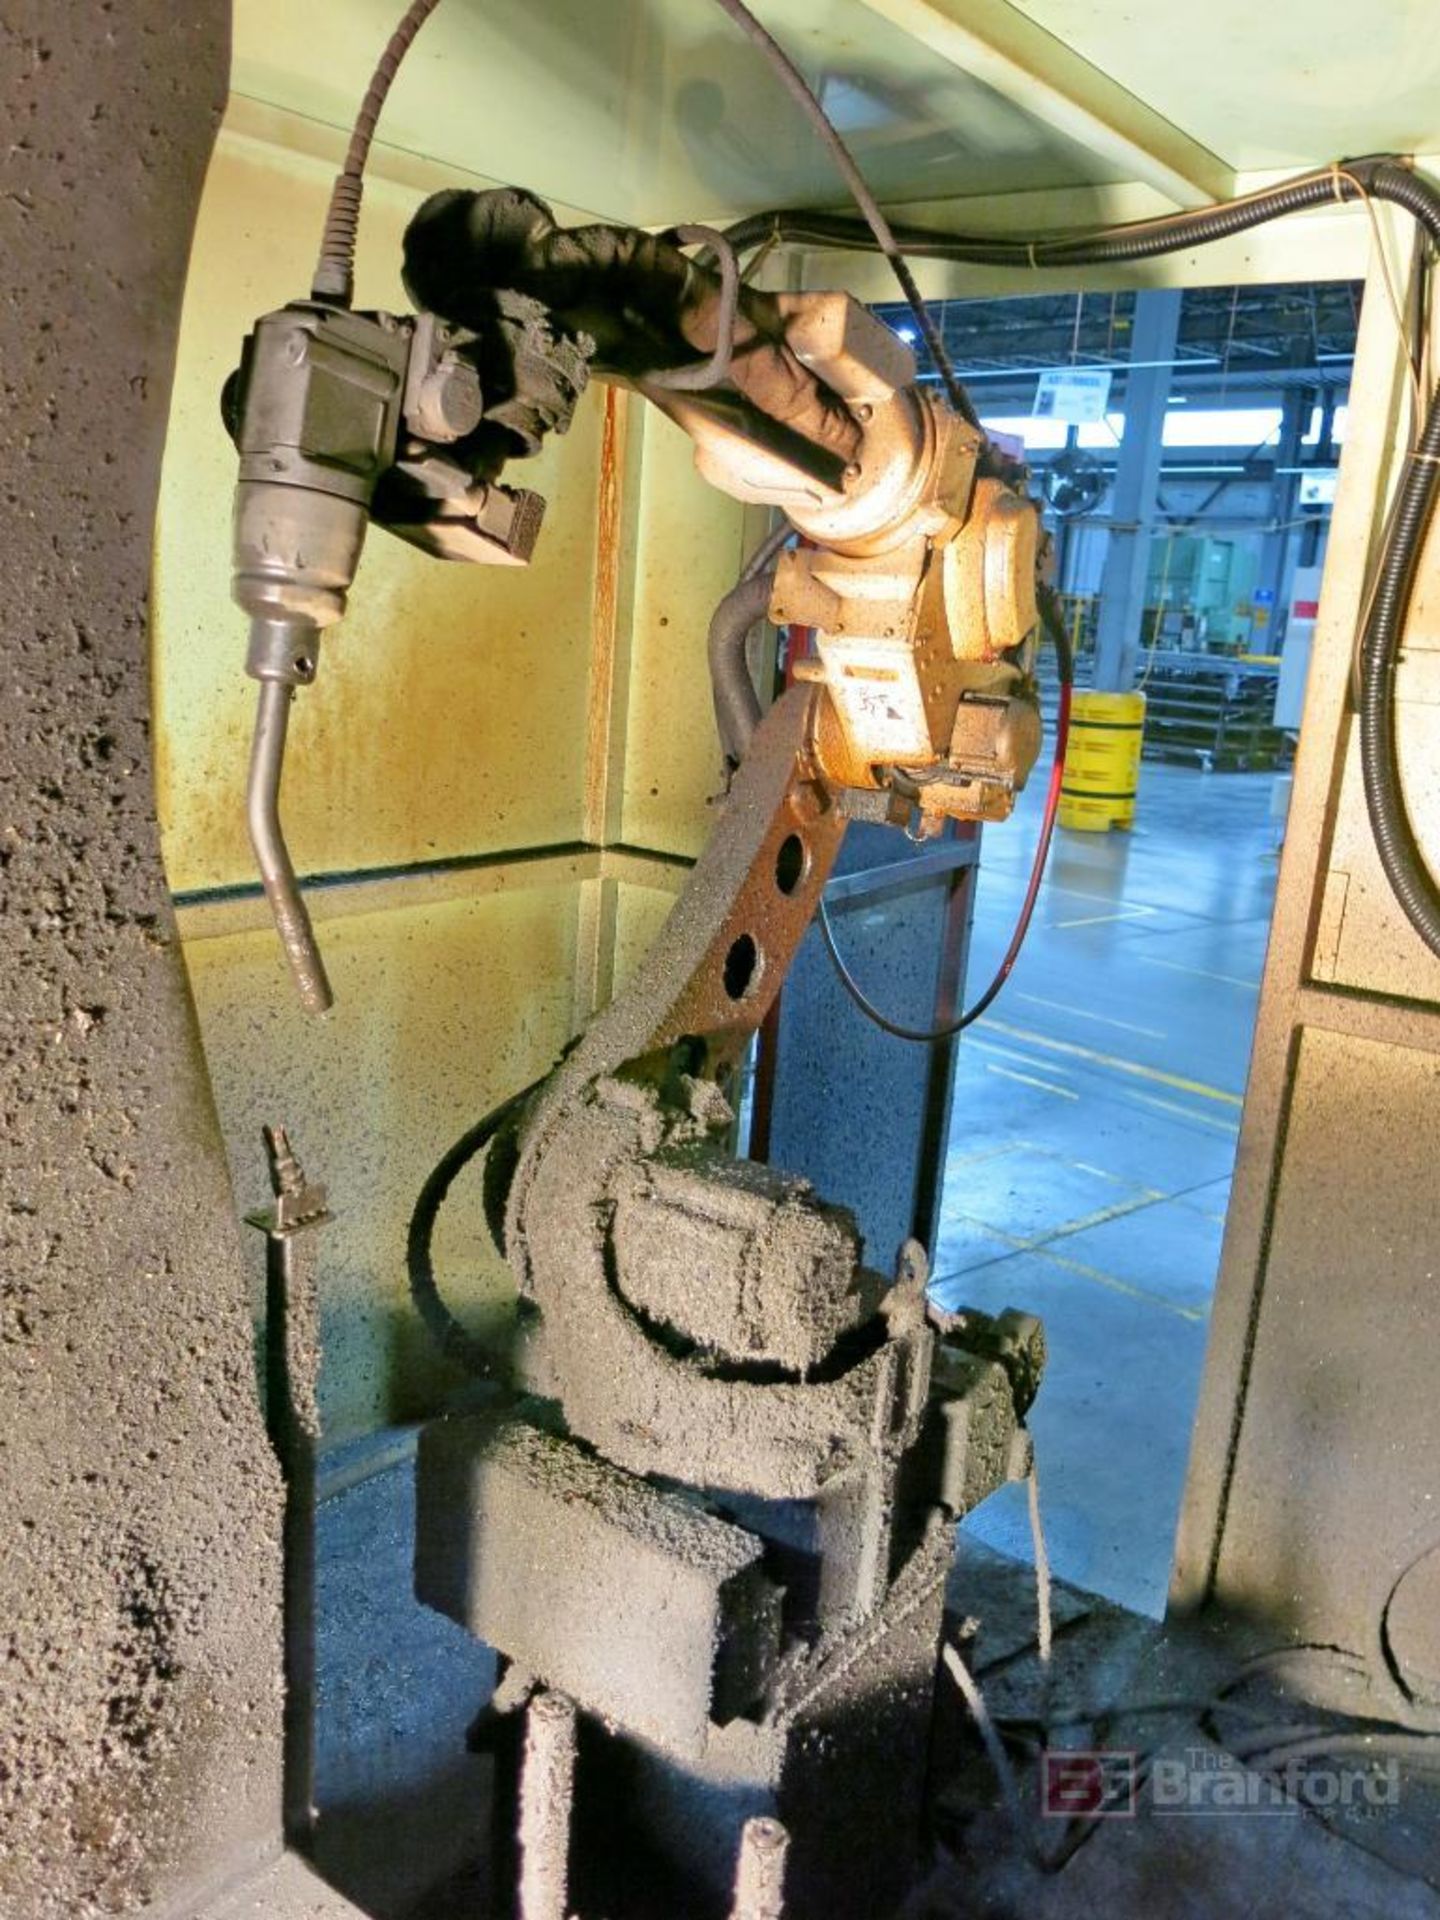 Panasonic Model TM-1400WGIII Robotic Welder - Image 4 of 8